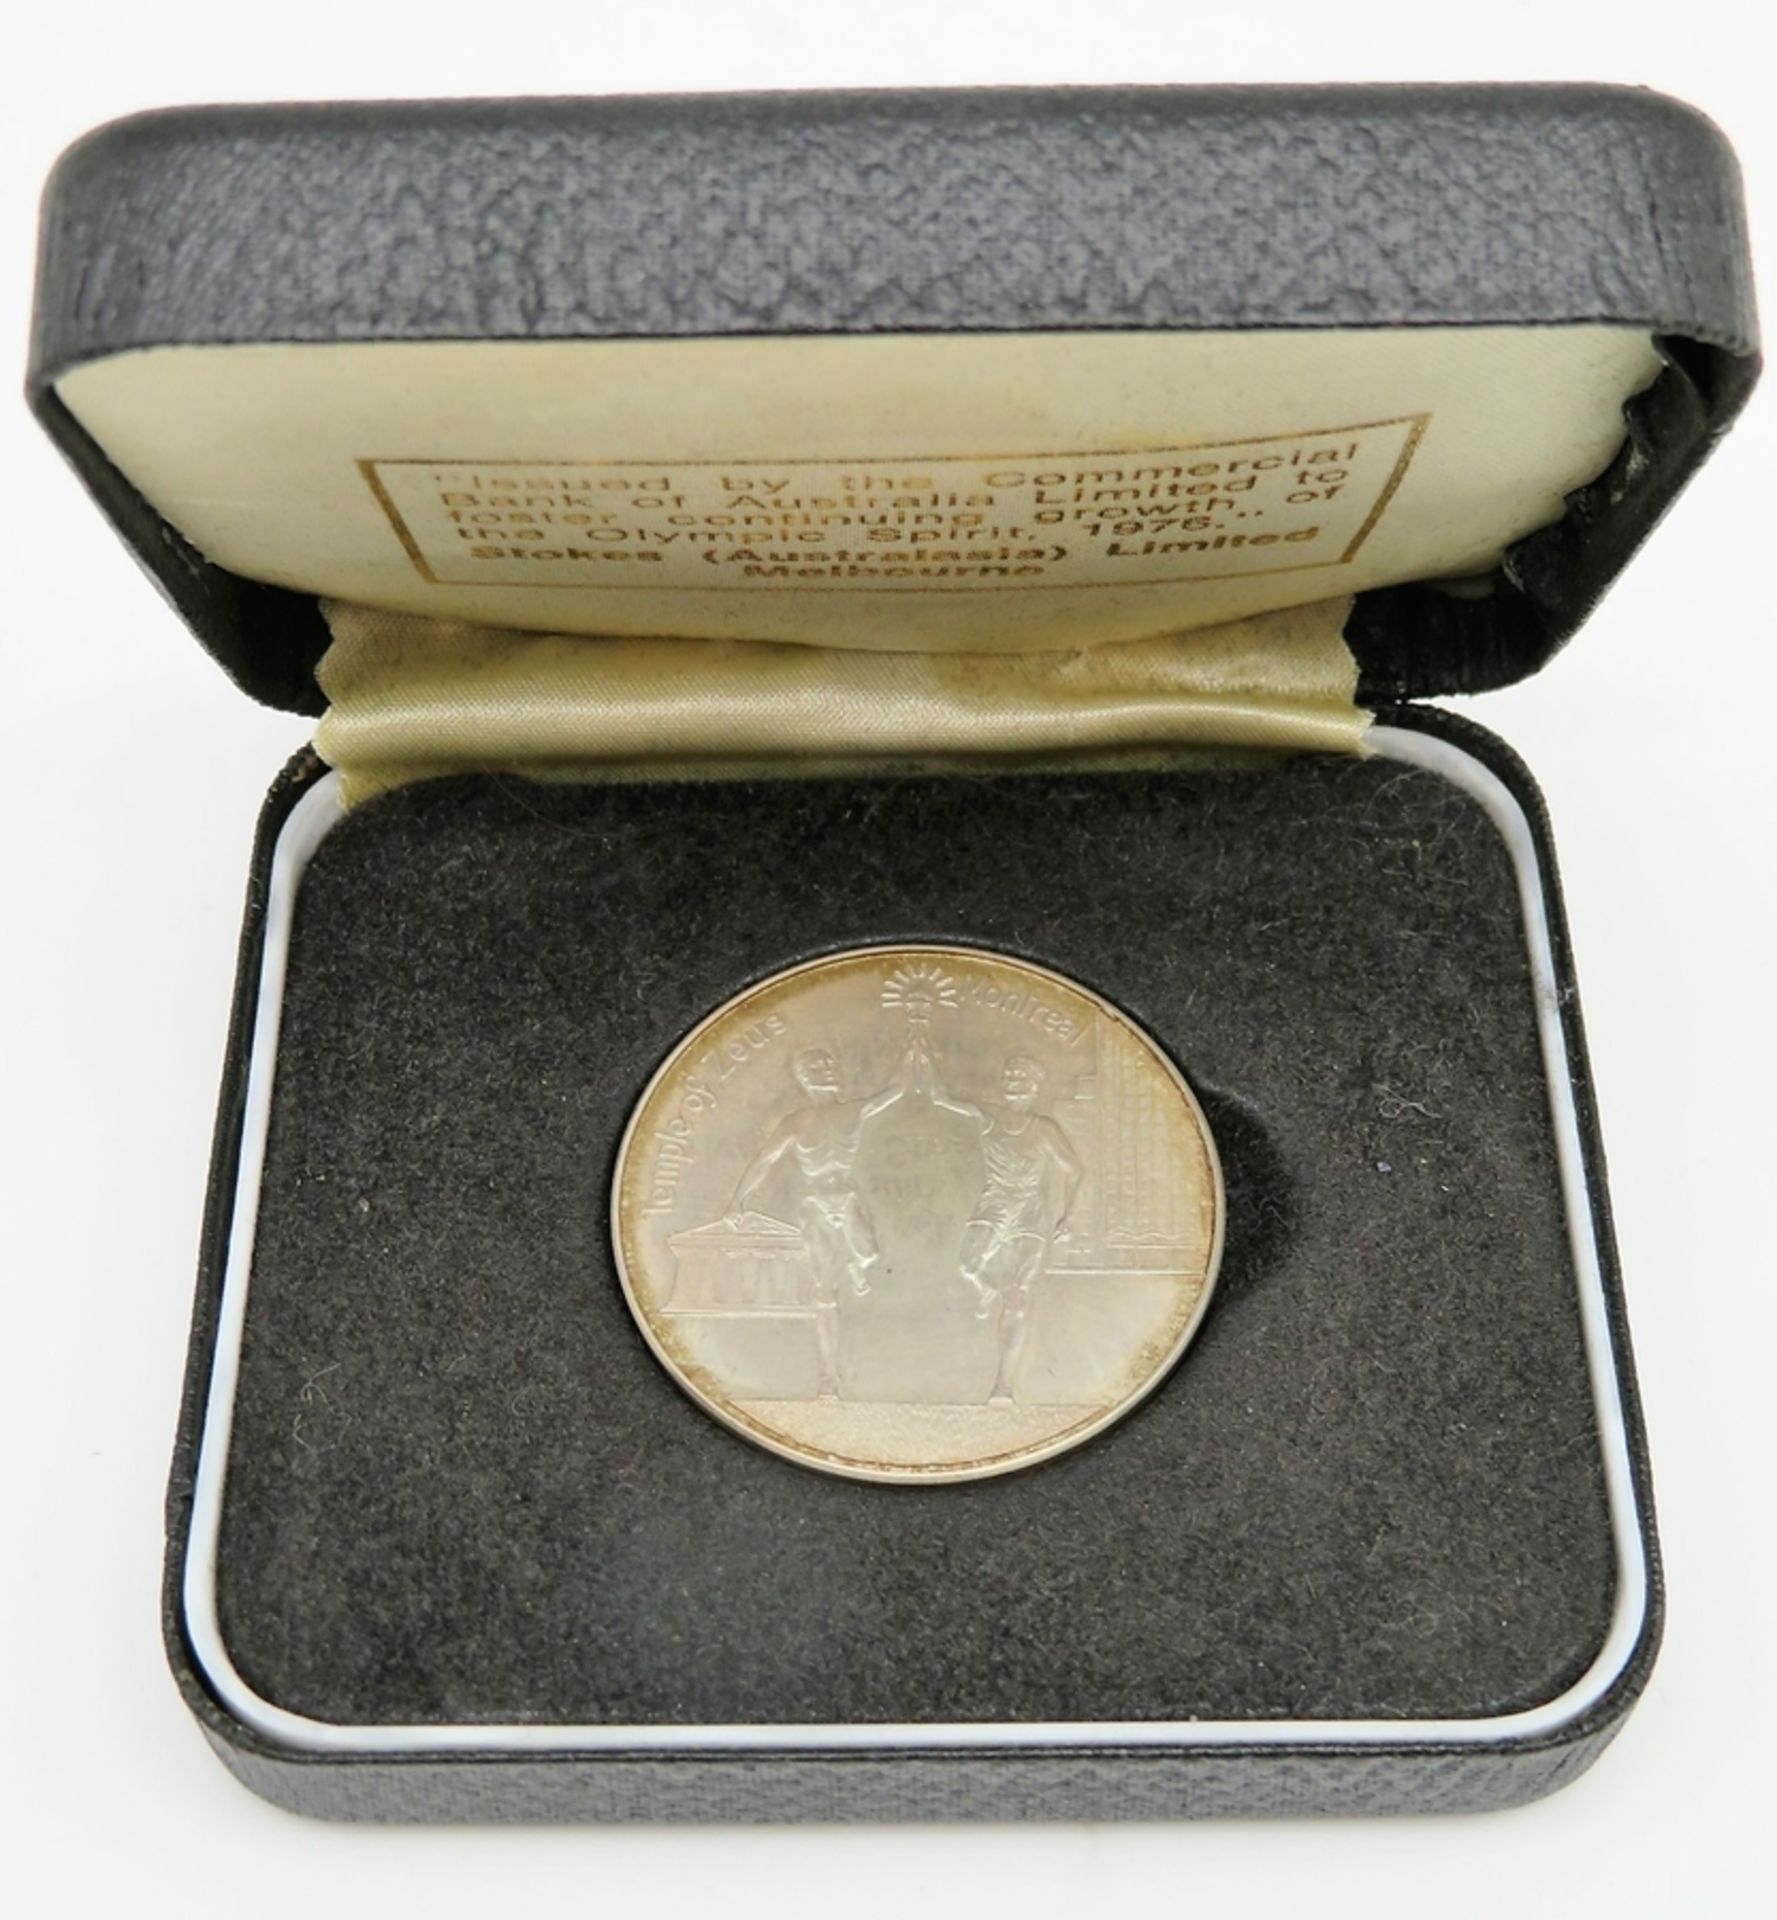 Medaille, Montreal, XXI. Olympiade 1976, Silber 925/000, gepunzt, 30,9 g, d 4 cm.